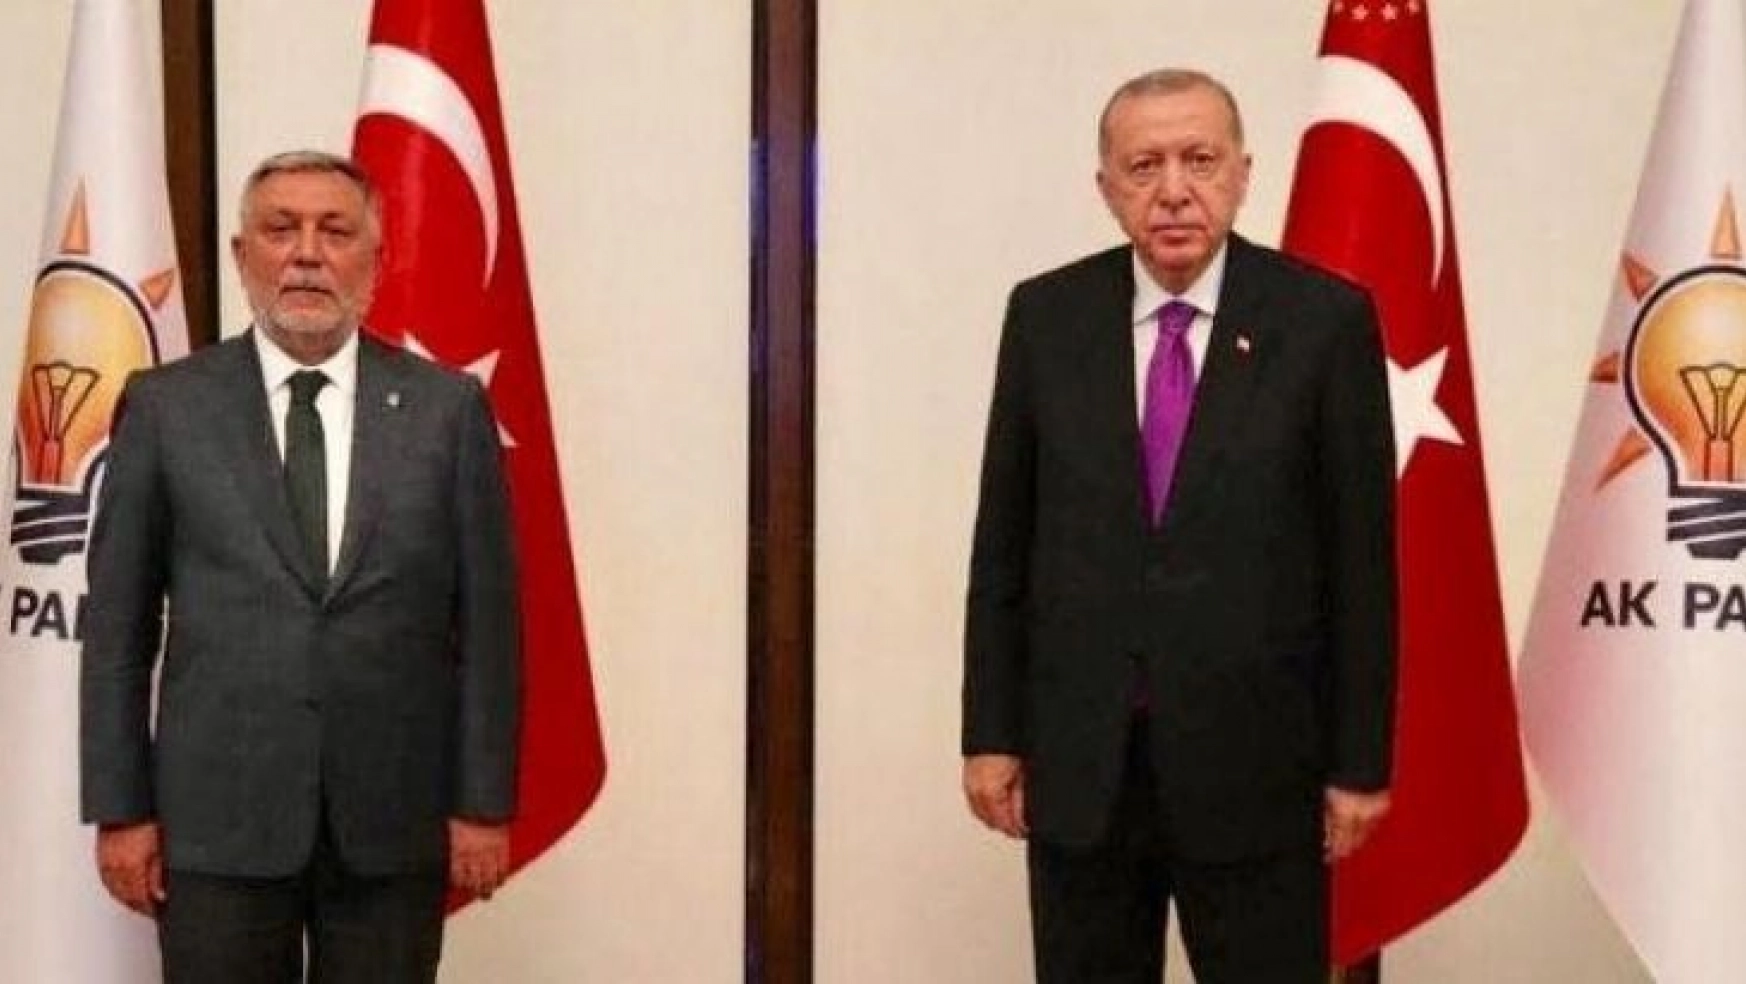 AK Parti İl Başkanı Yıldırım: 'AK Parti, reformlar ve seçim başarılarıyla dolu 21 yılı geride bıraktı'